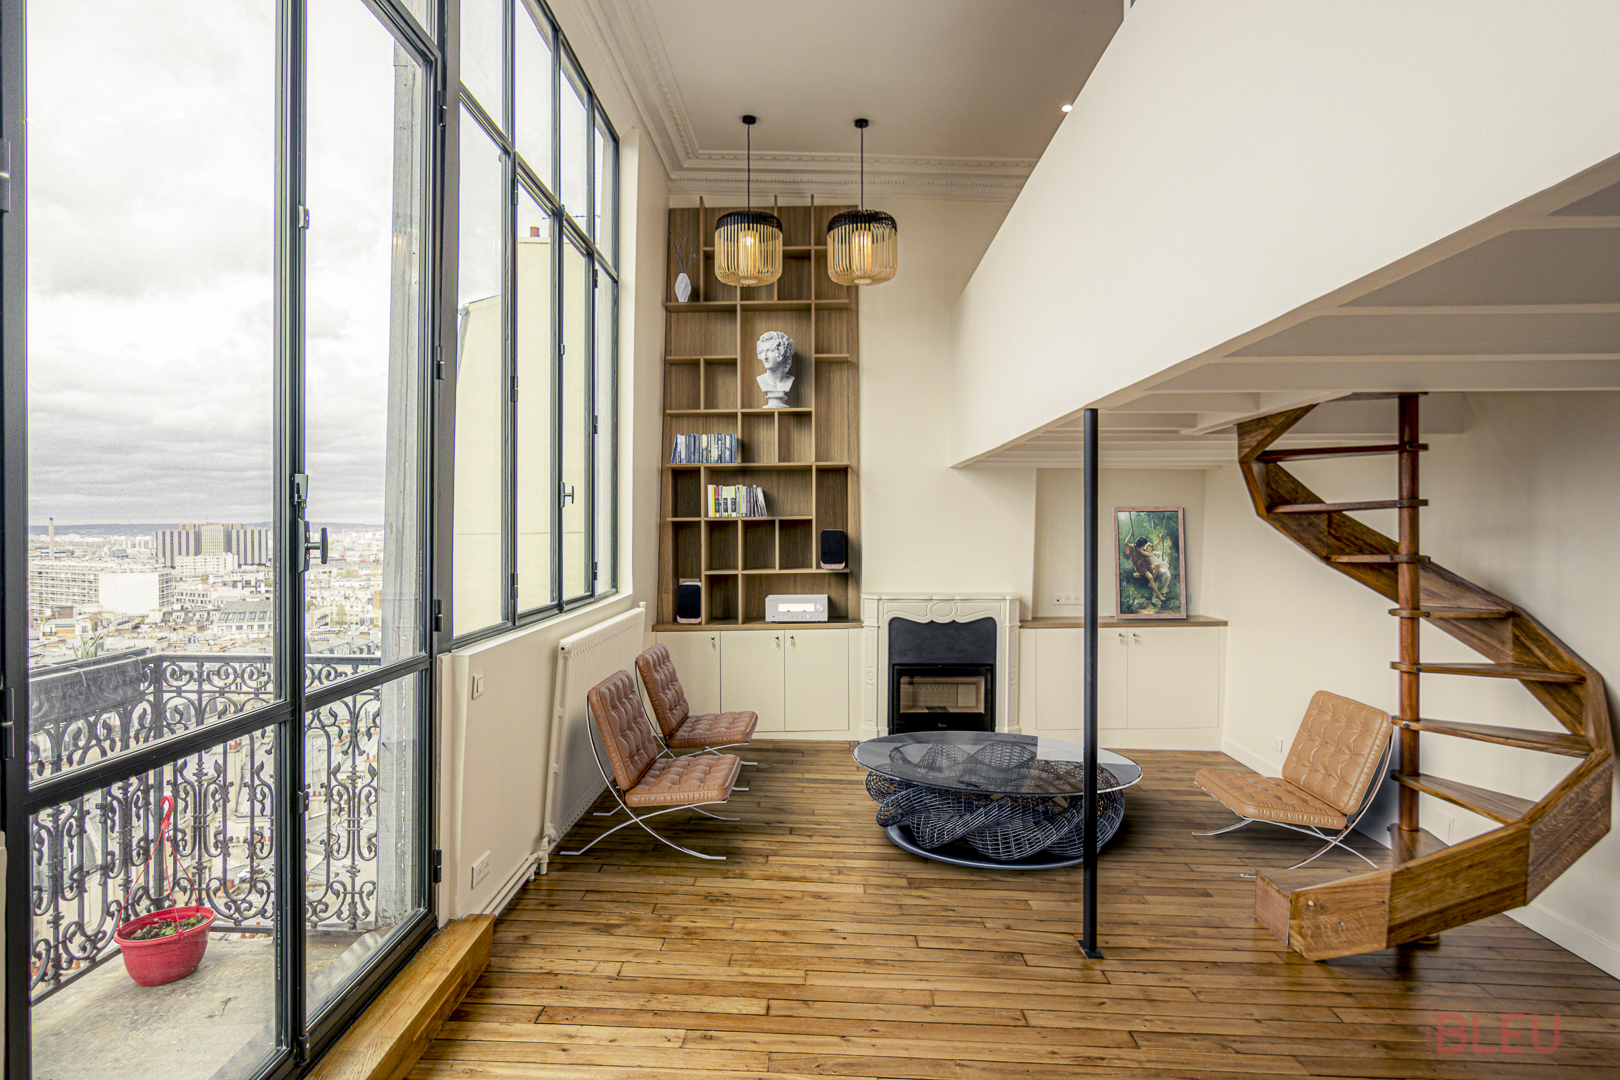 Espace de vie moderne avec grandes fenêtres et escalier en colimaçon en bois, conçu par un architecte intérieur Paris pour un projet de rénovation loft avec éléments haussmanniens et décoration élégante.